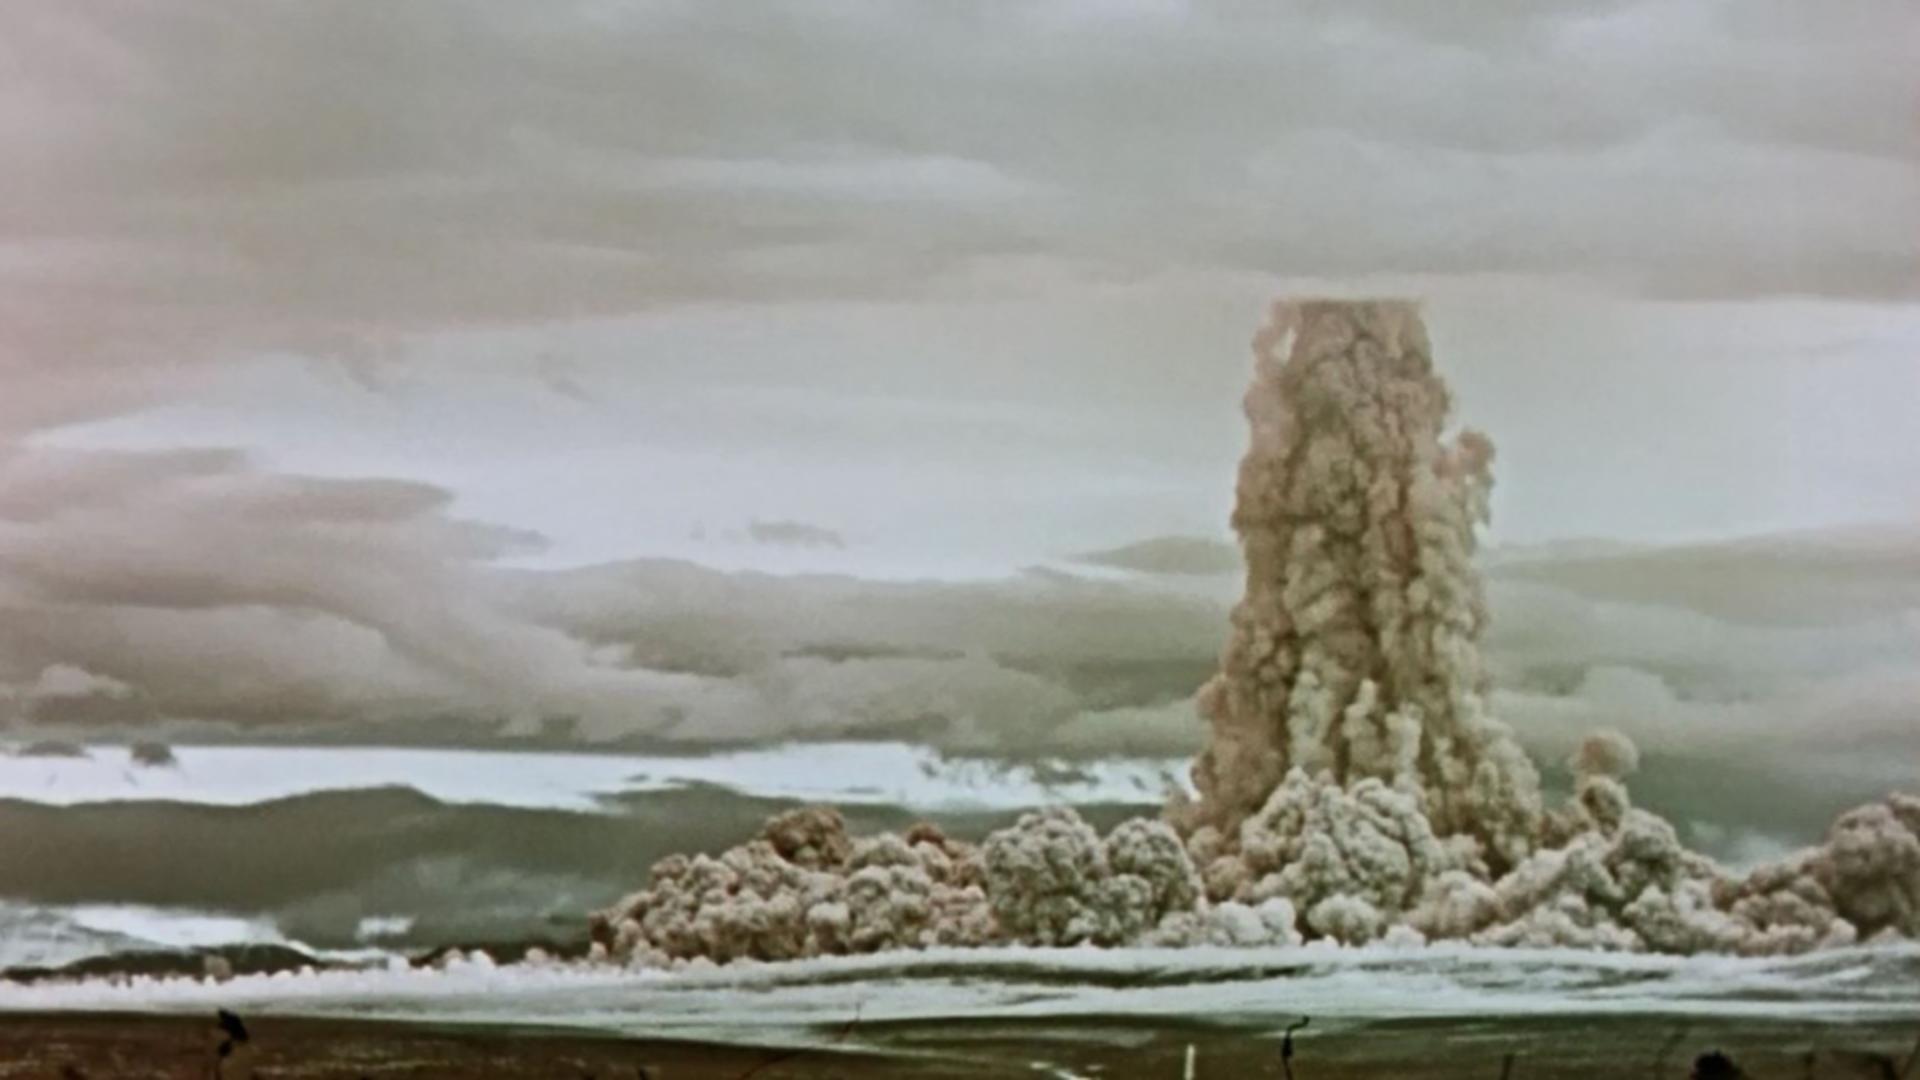 Explozia bombei Țar, cea mai mare din istorie (1961 URSS - Profimedia)